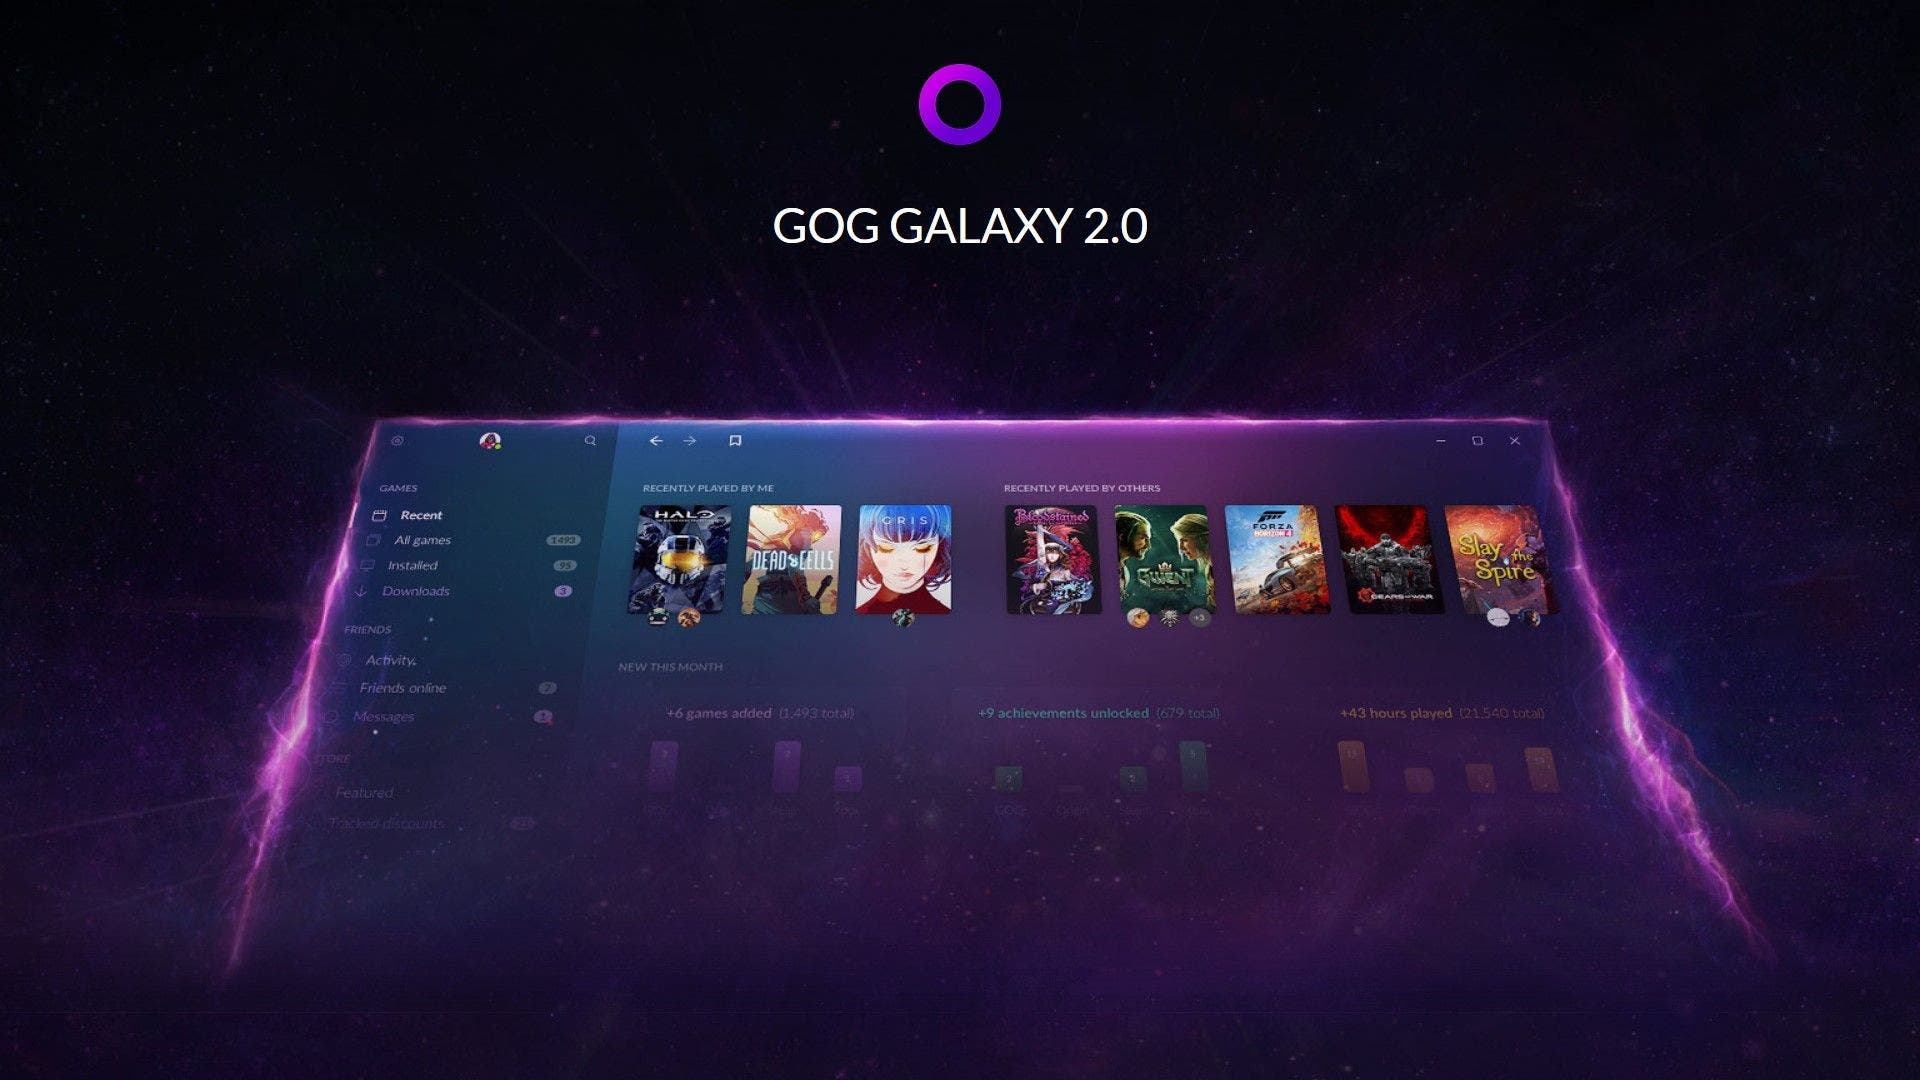 galaxy 2.0 gog